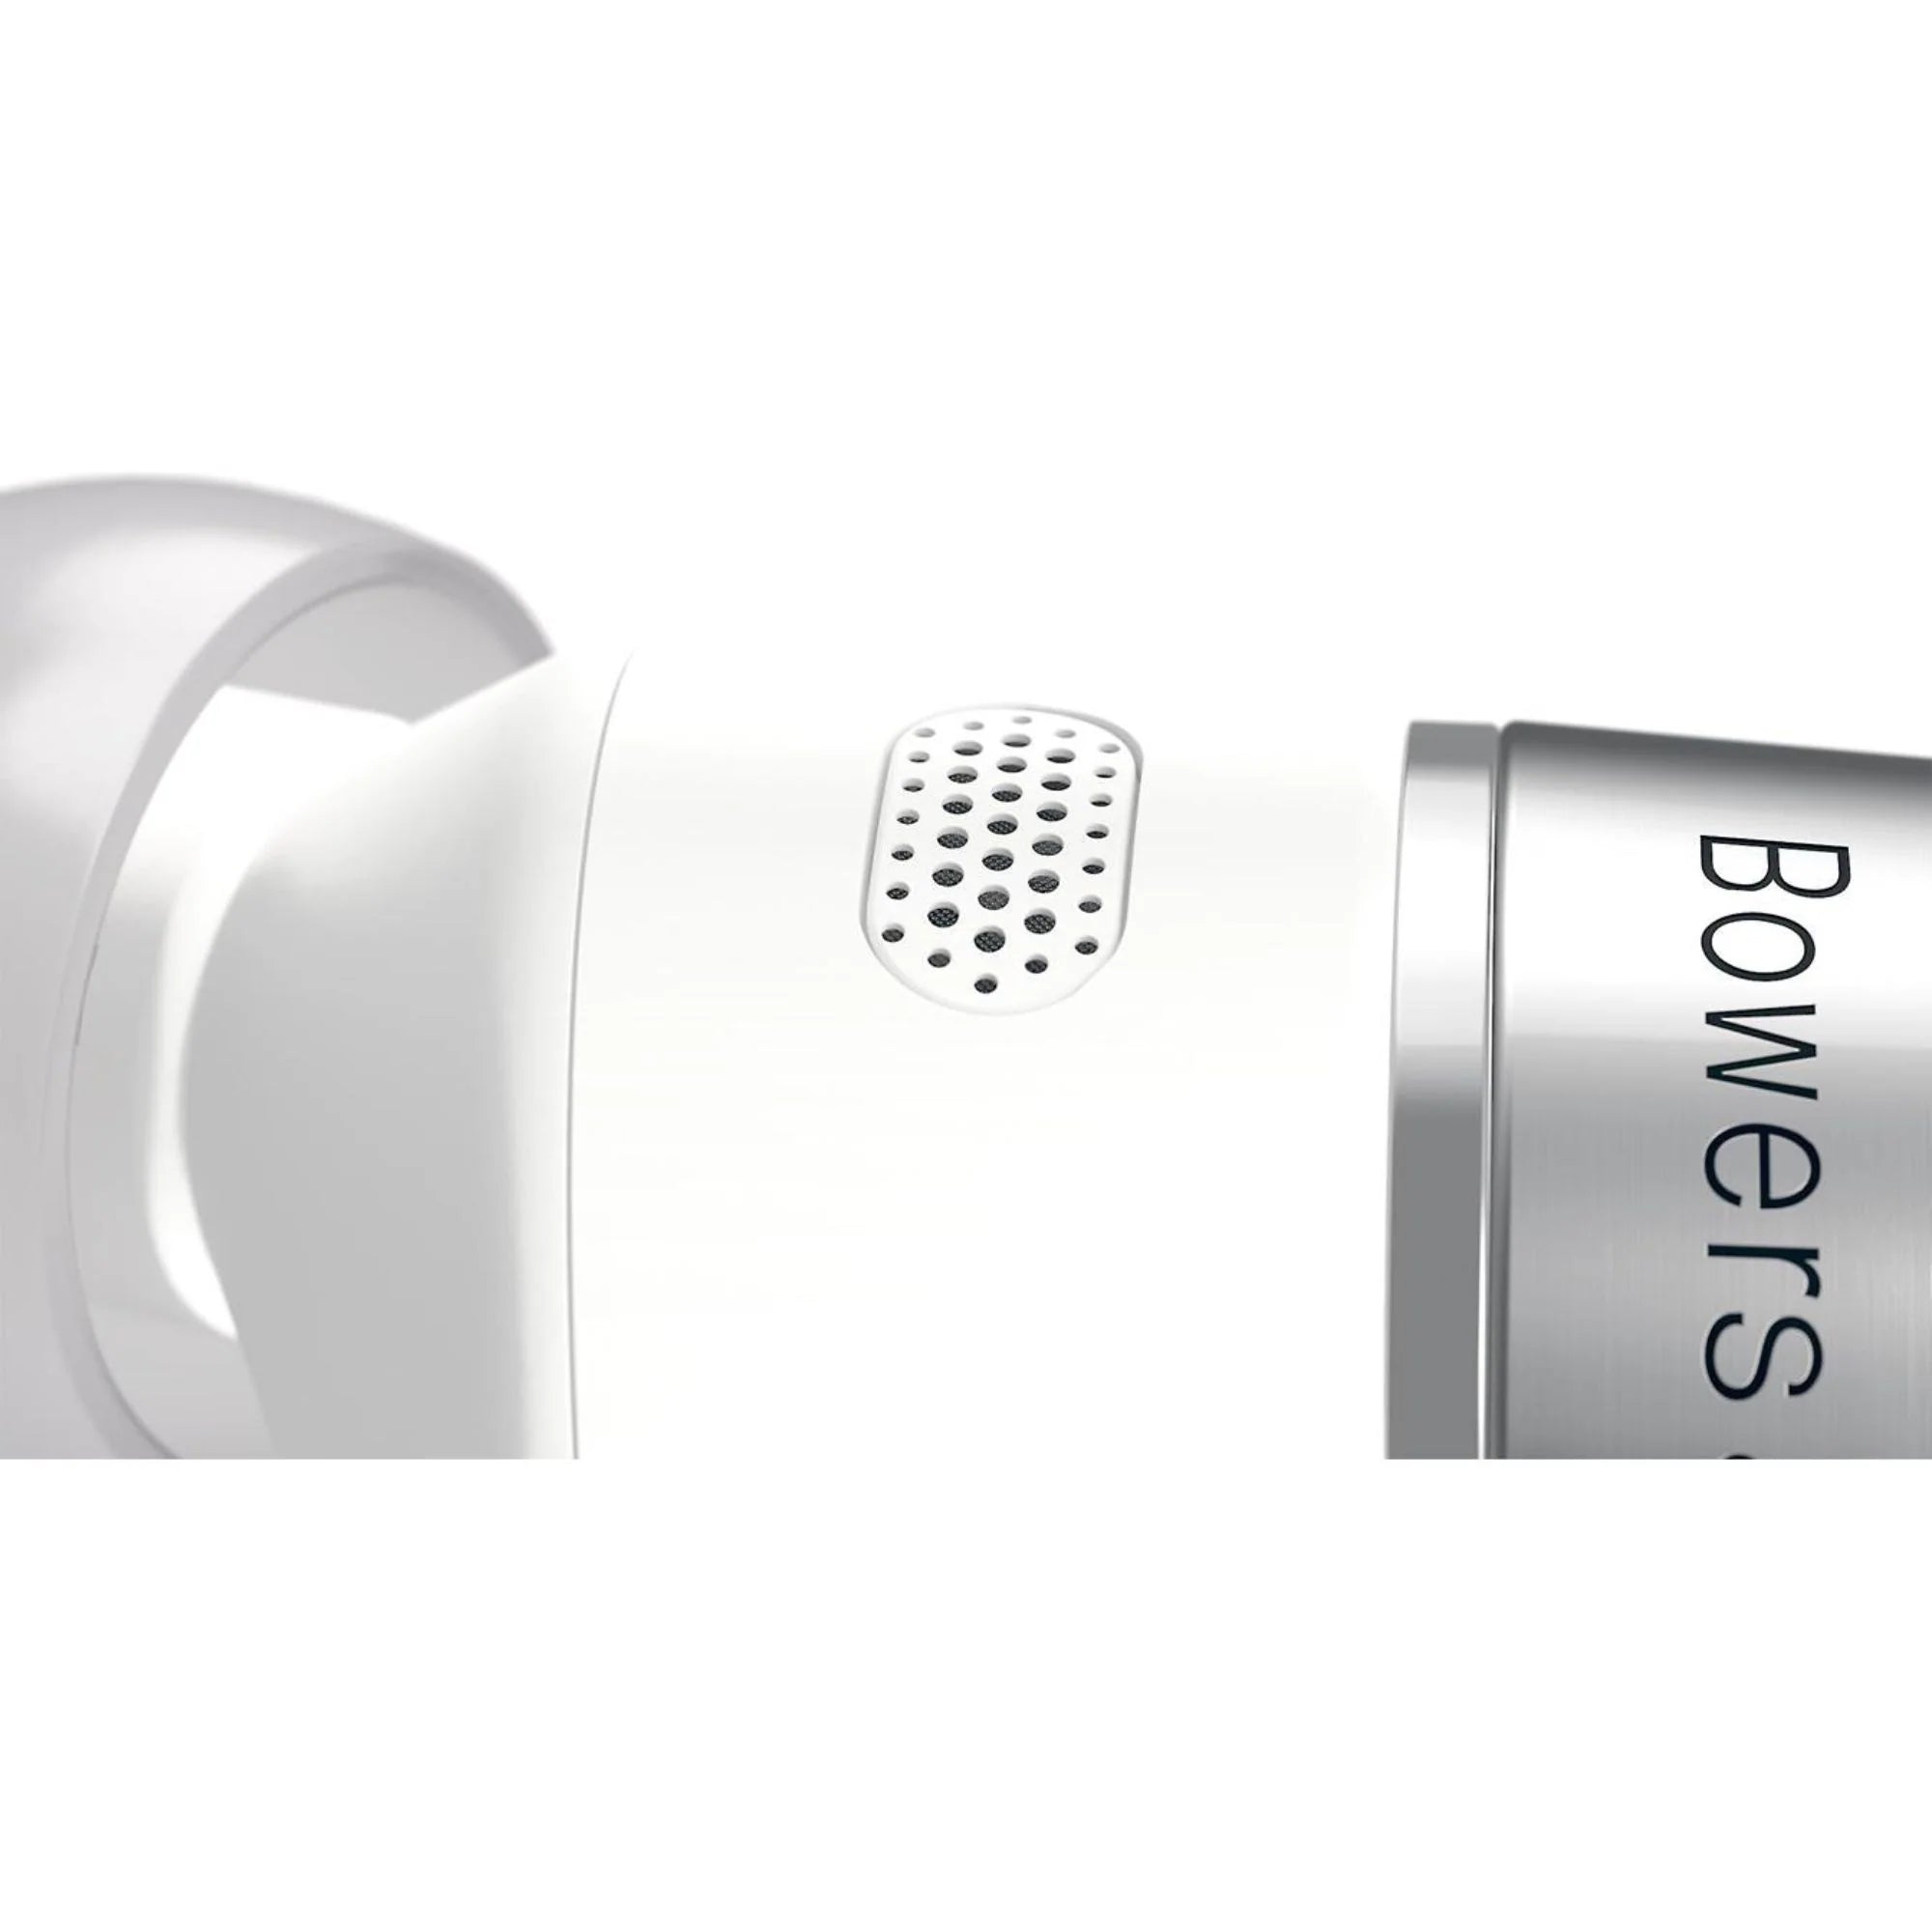 Bowers & Wilkins Pi7 S2 True Wireless Earbuds